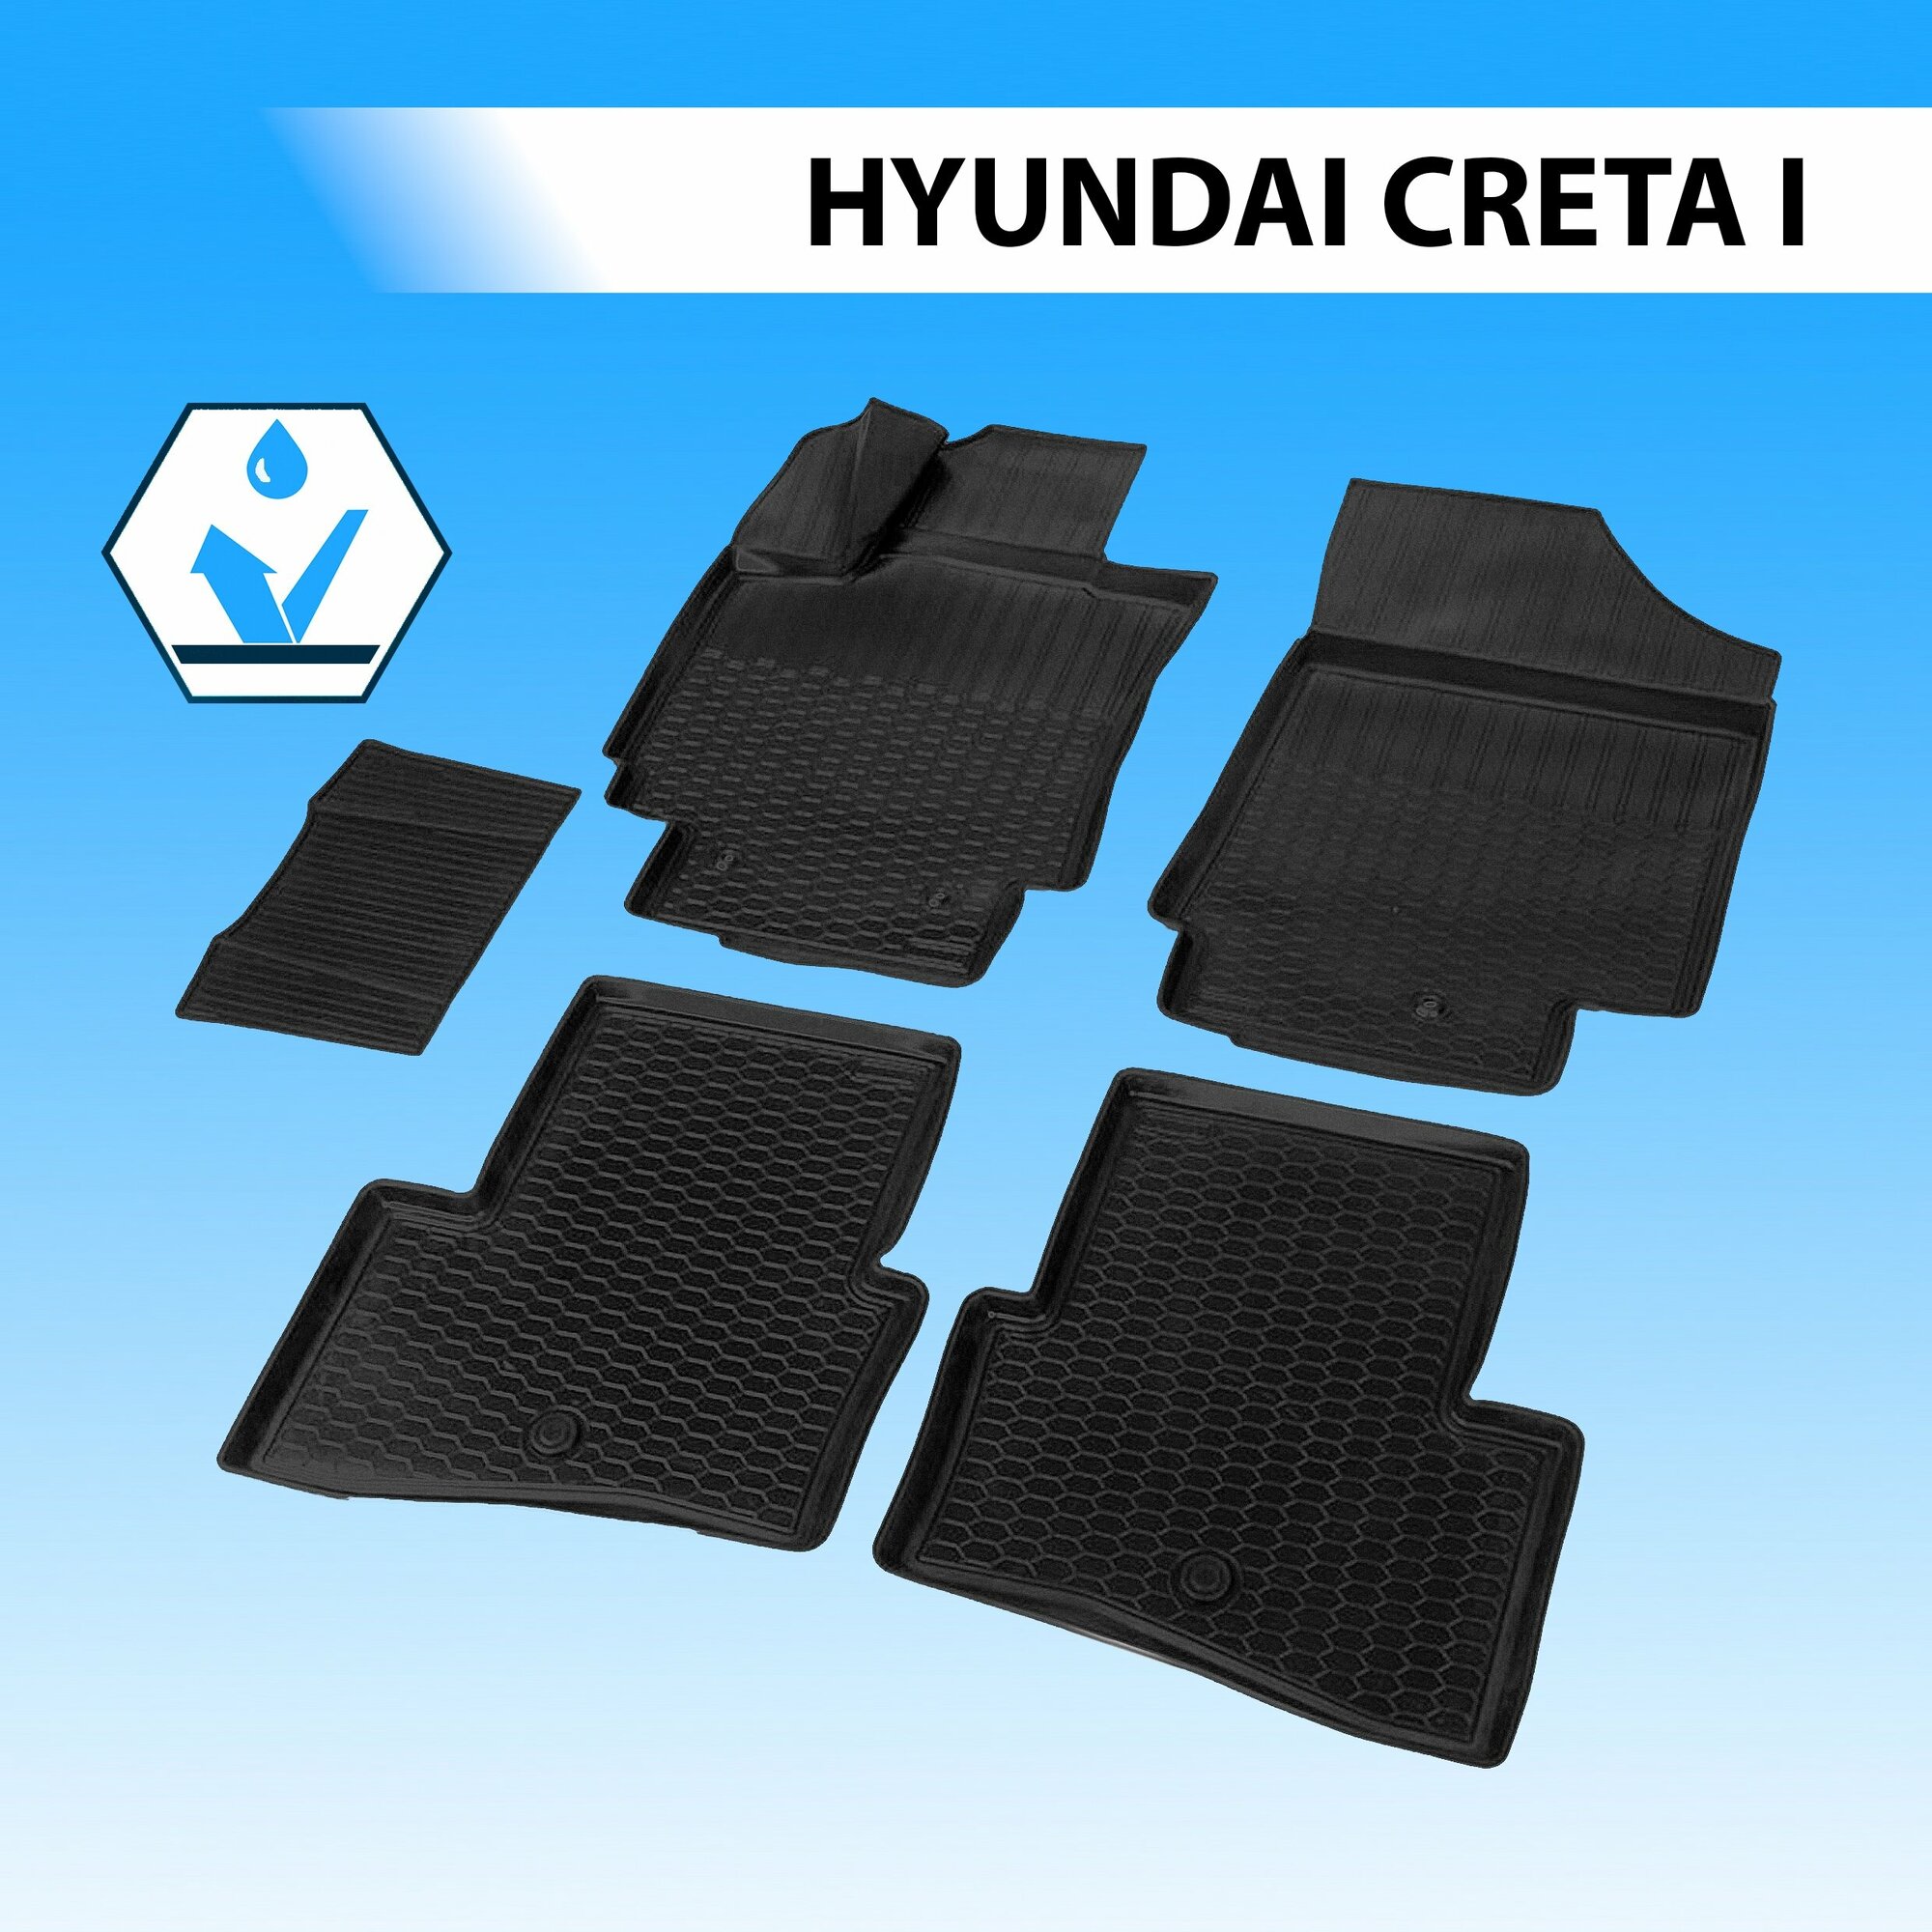 Комплект автомобильных ковриков hyundai creta 2016- , полиуретан, низкий борт, 5 предметов, крепеж, RIVAL 4X4 12310001 (1 шт.)